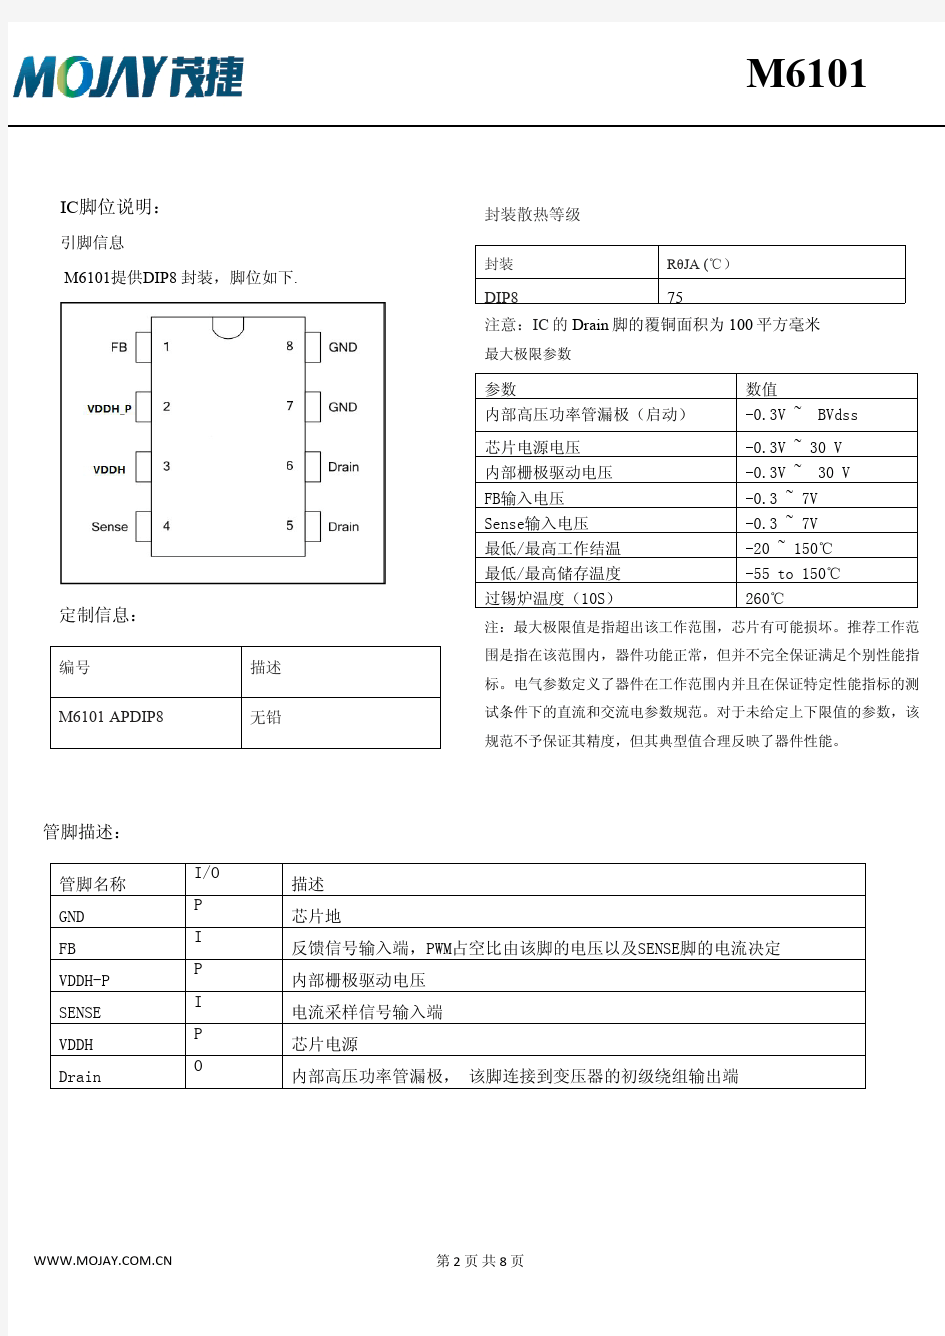 茂捷M6101规格书(中文)_Rev.1.1